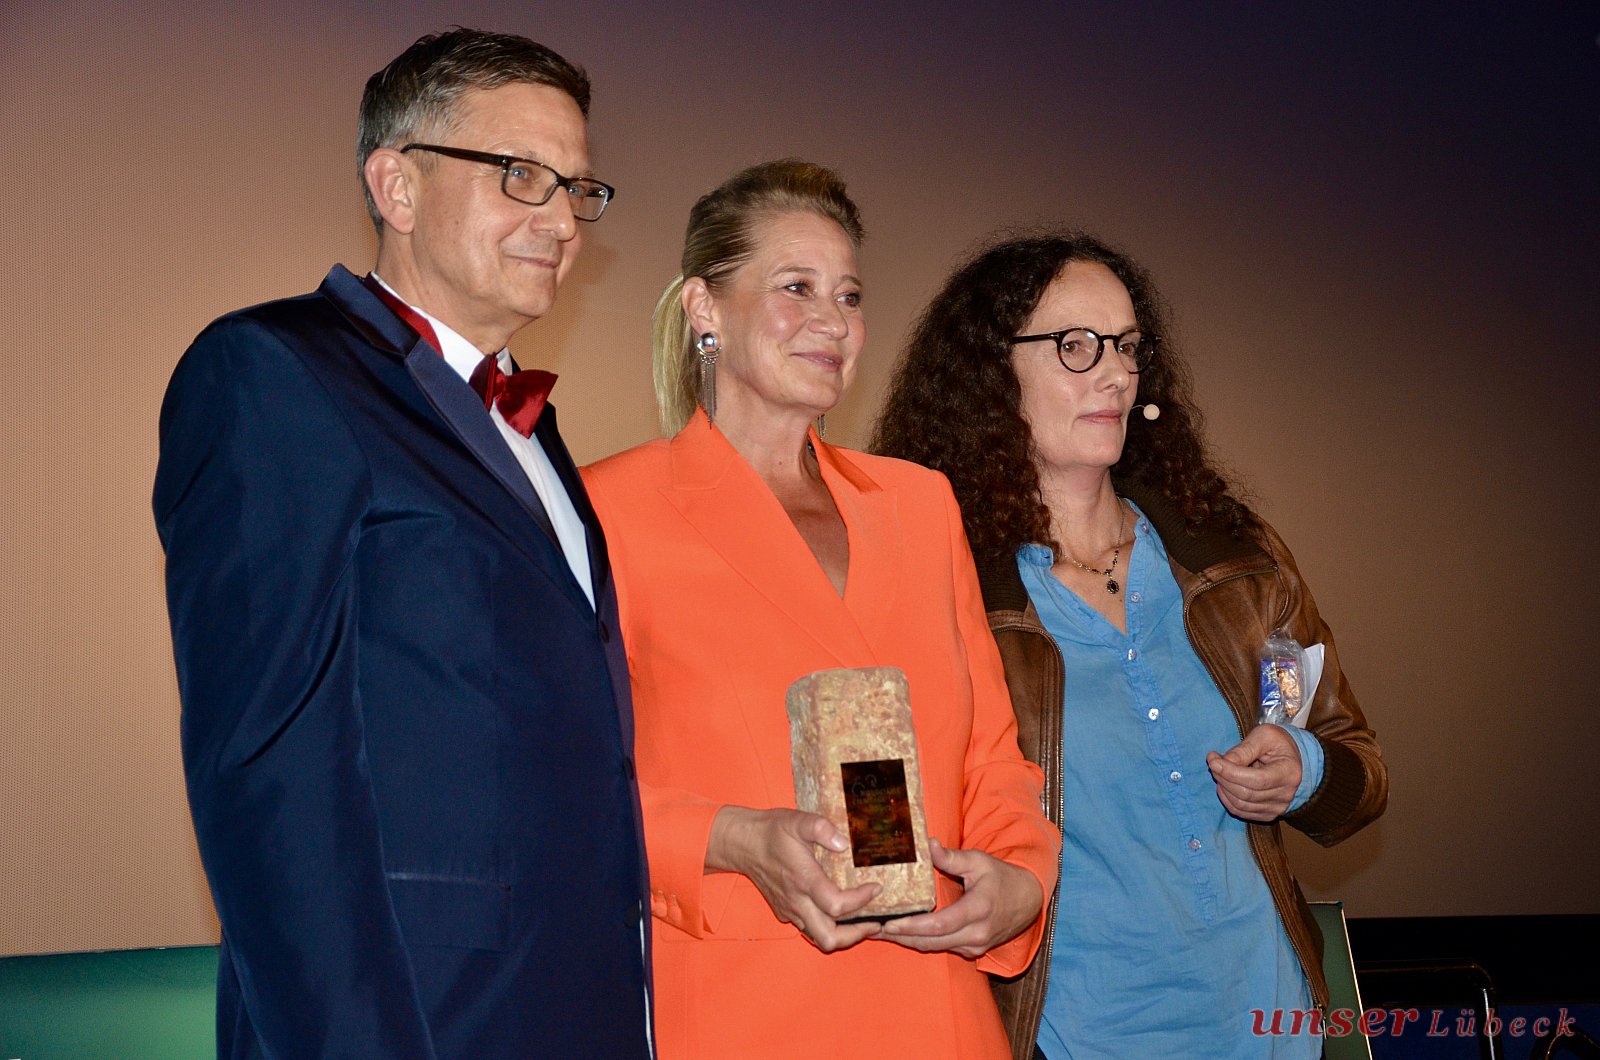 Ehrenpreis für die dänische Schauspielerin Trine Dyrholm - Eröffnung 63. Nordische Filmtage Lübeck